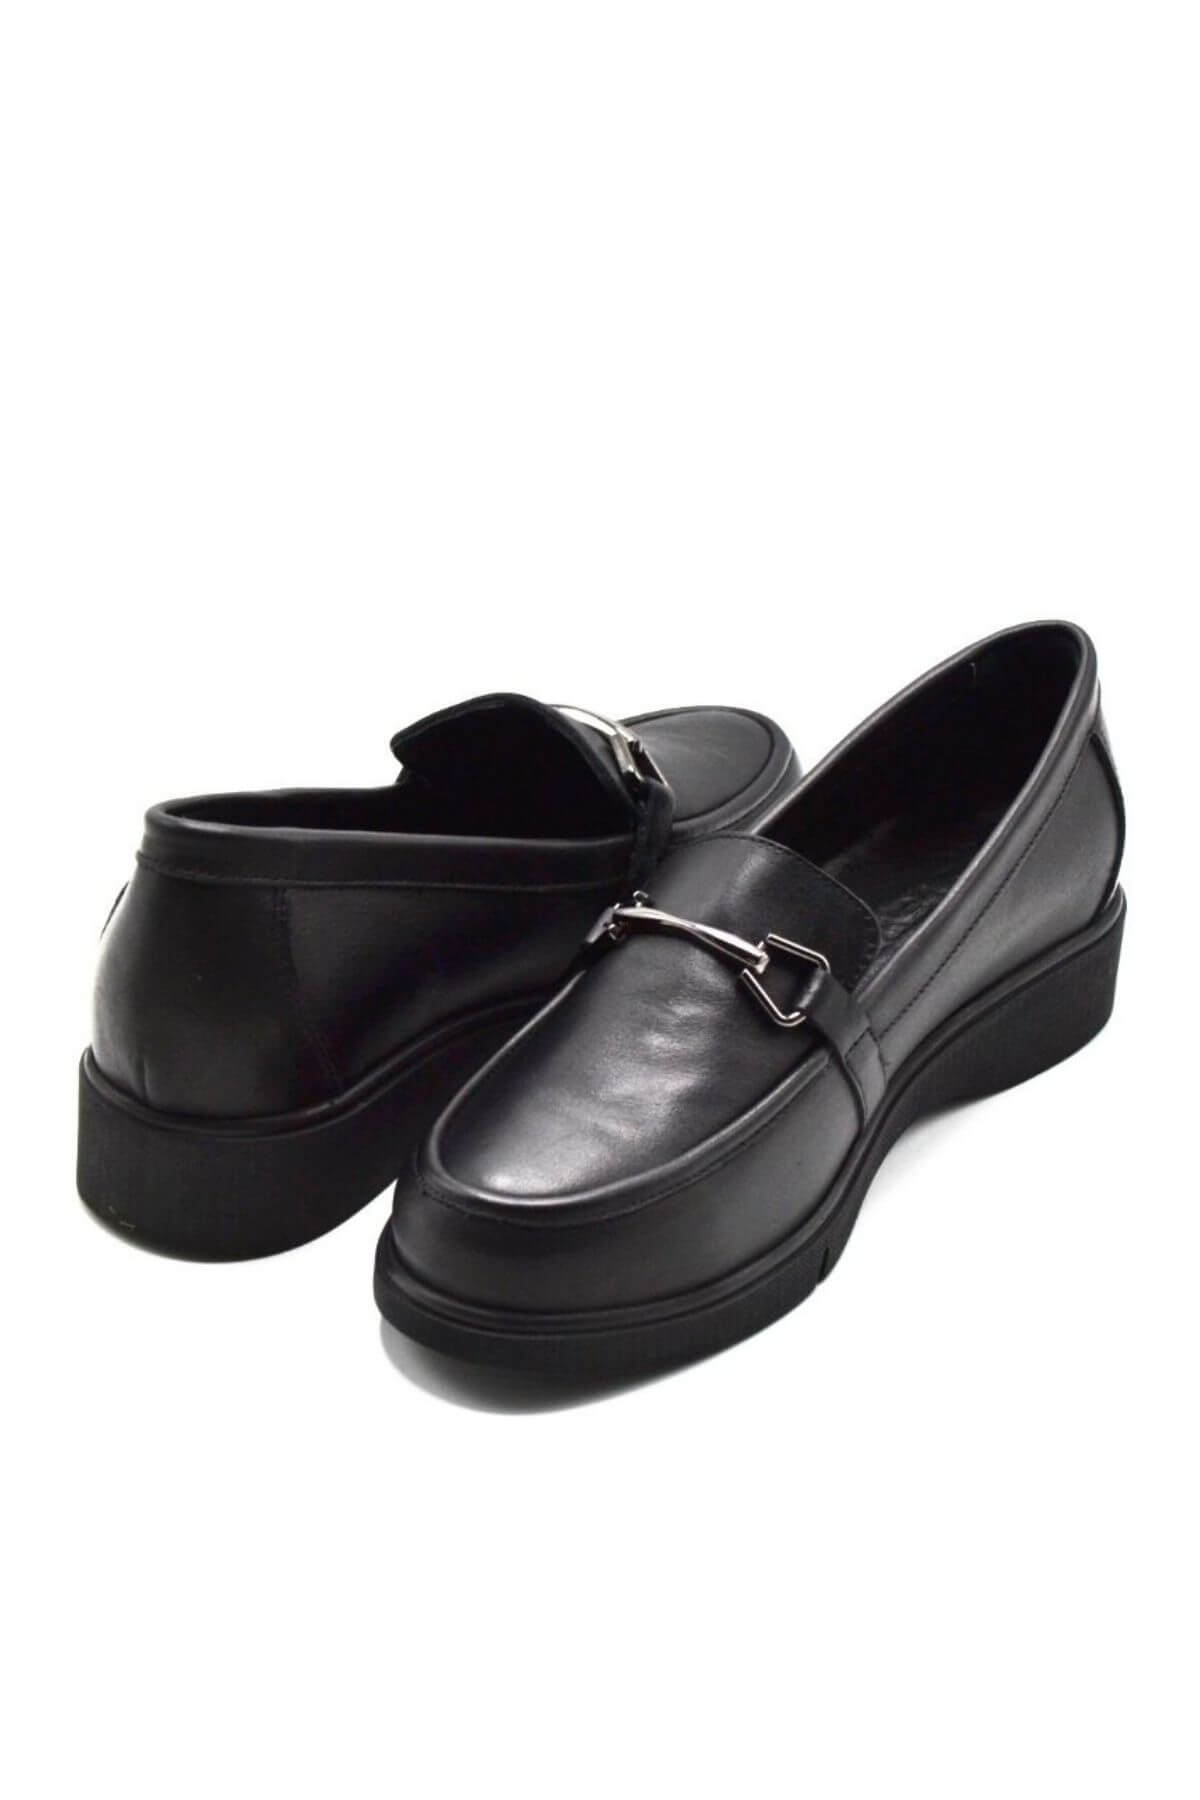 Kadın Deri Ayakkabı Siyah 23073005K - Thumbnail